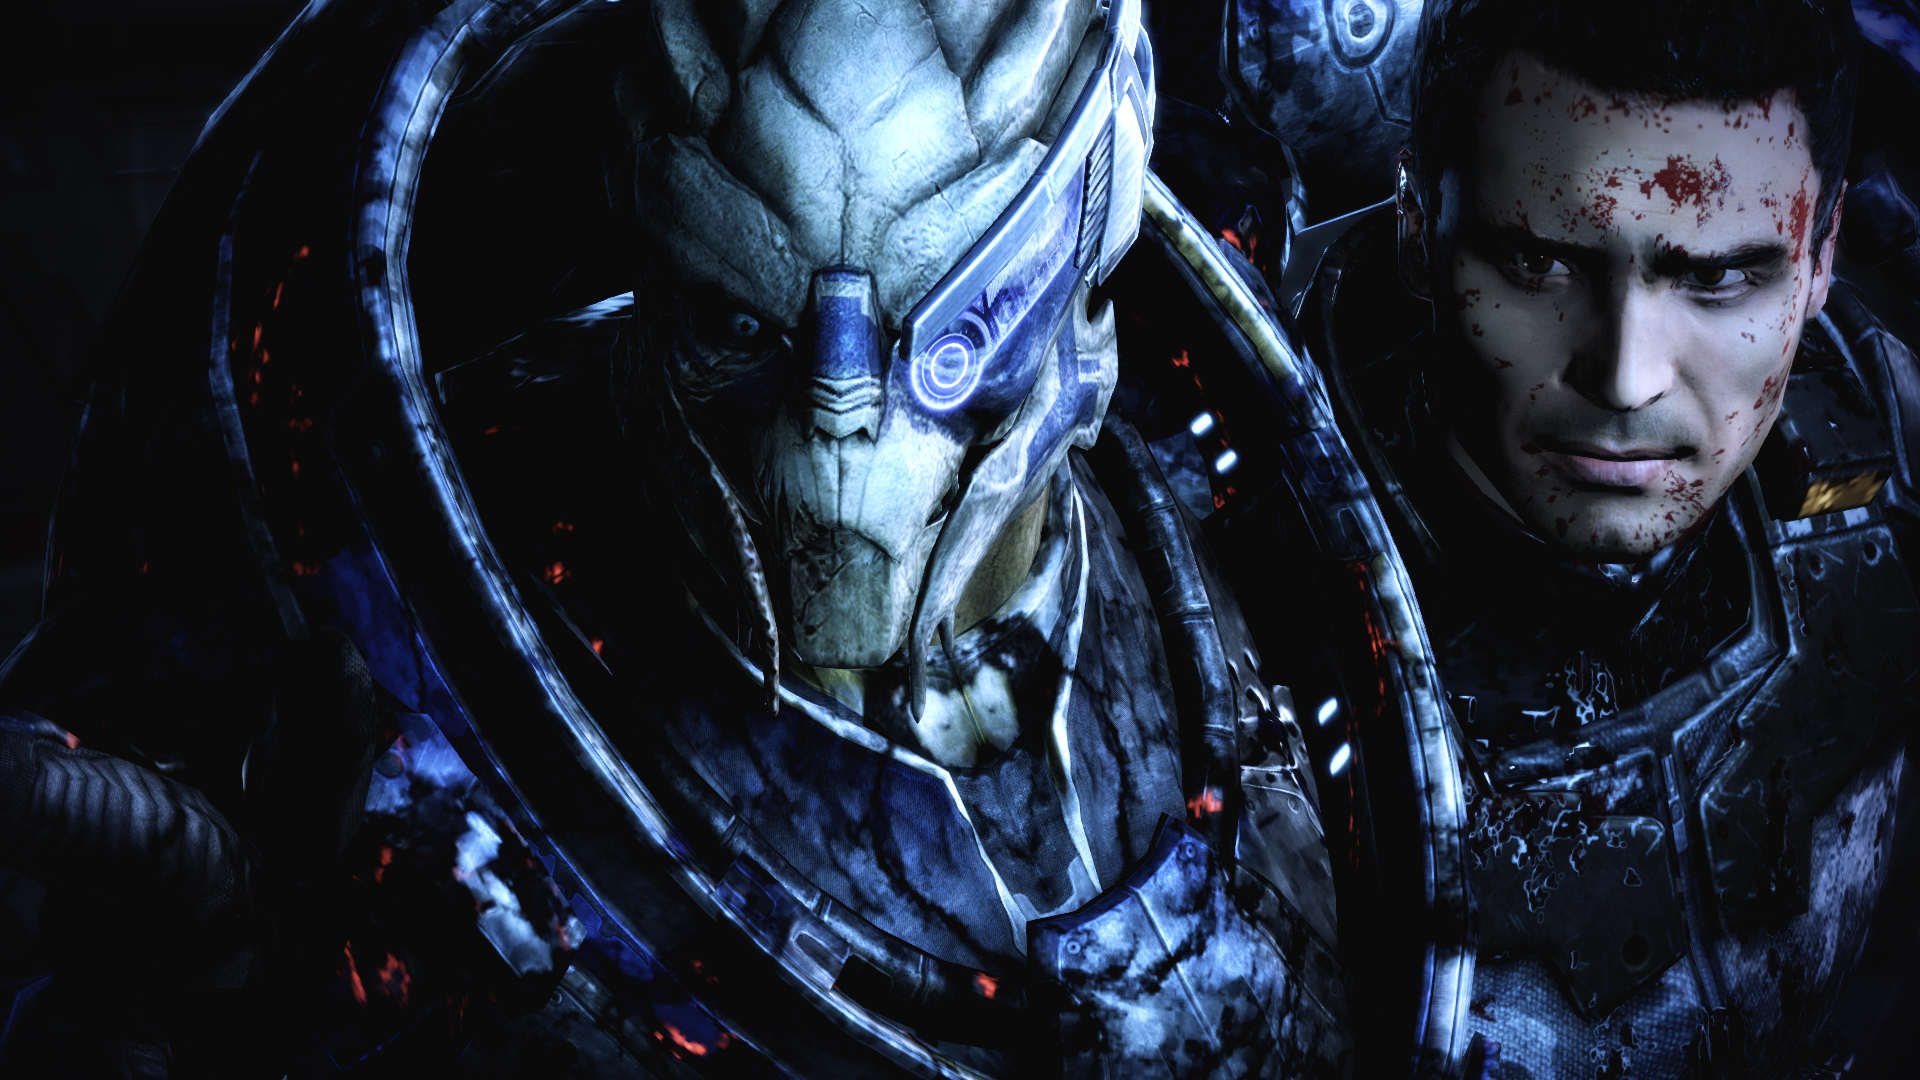 Free download wallpaper Mass Effect, Video Game, Mass Effect 3, Garrus Vakarian on your PC desktop